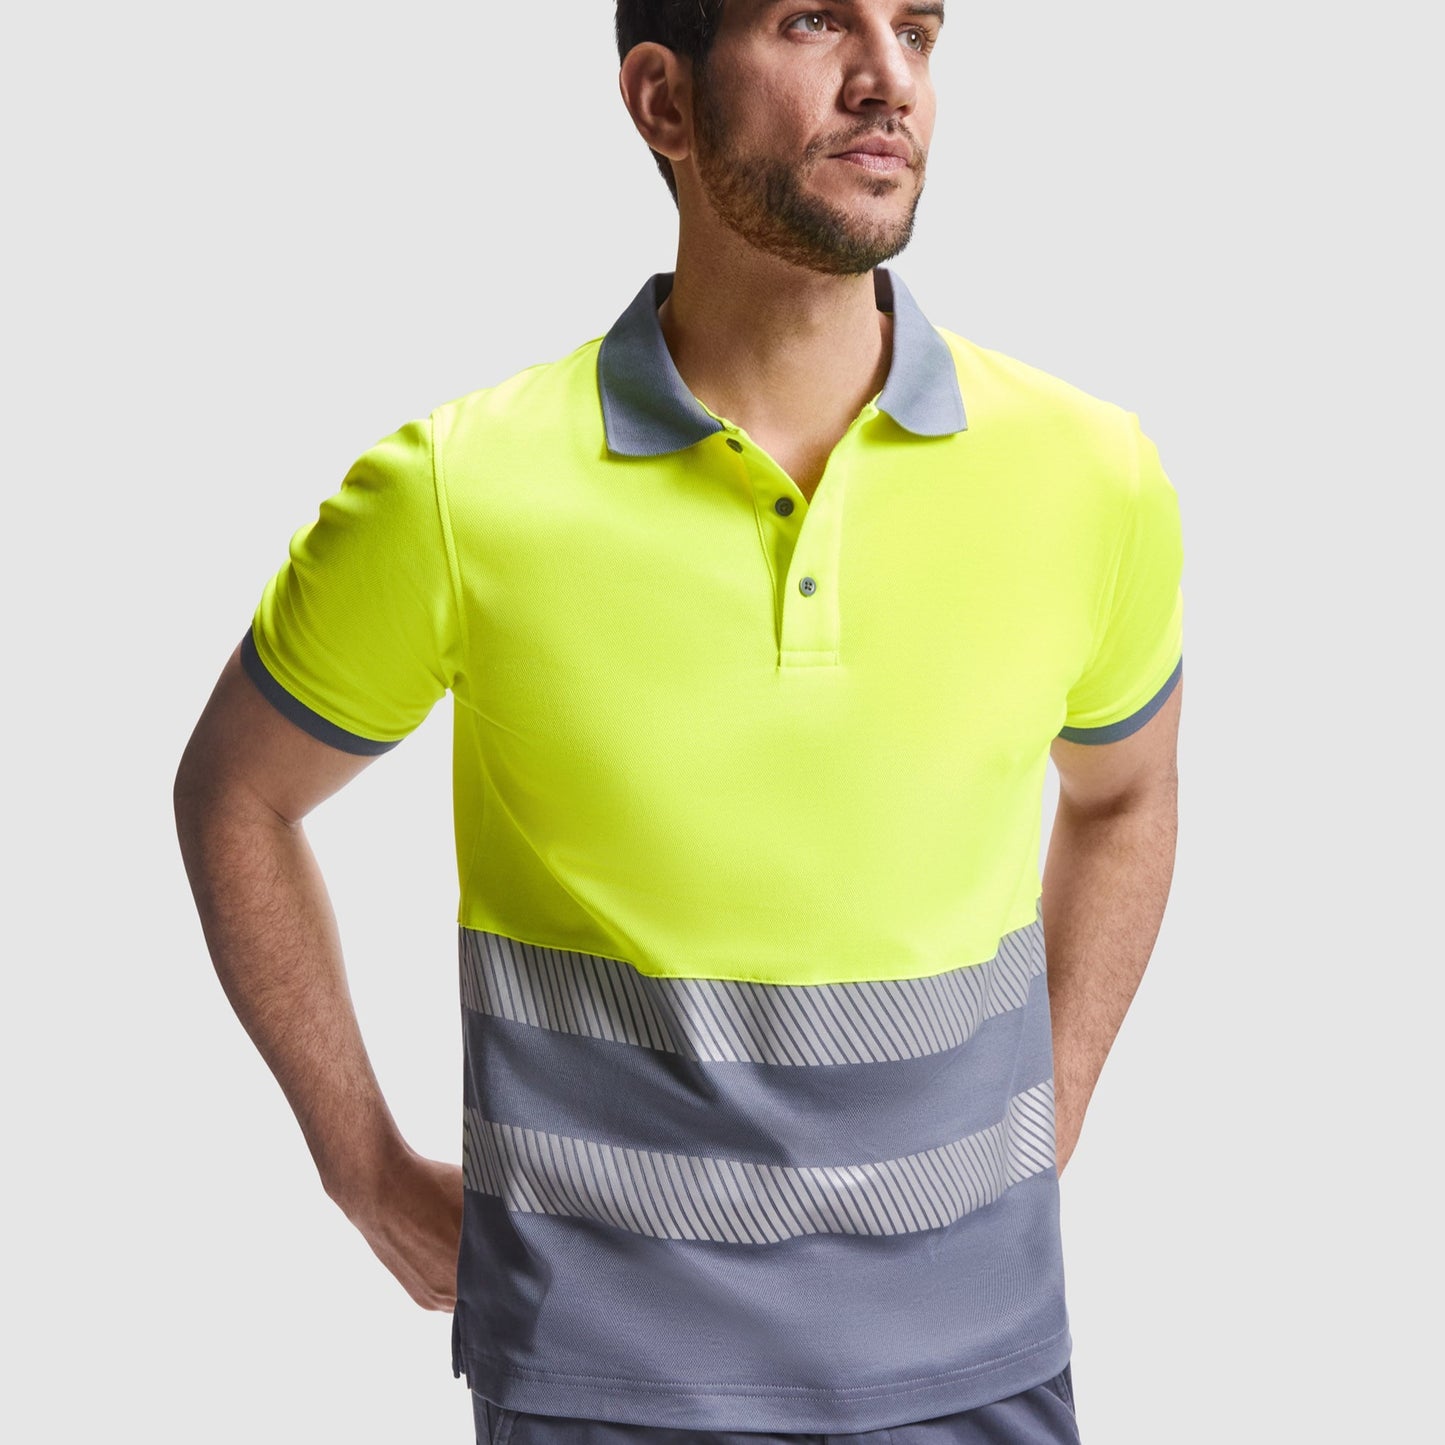 Trumpų rankovių gero matomumo polo marškinėliai yra sukurti užtikrinti maksimalų saugumą ir komfortą darbo metu. Pukiai tinka karštoms vasaros dienoms, maloni medžiaga užtikrina gerą oro cirkuliaciją.  Savybės:  1x1 briaunota apykaklė: Suteikia elegantišką ir tvarkingą išvaizdą. Kontrastinga 3 sagų apykaklė: Papildo stilingą dizainą ir leidžia lengvai apsirengti.